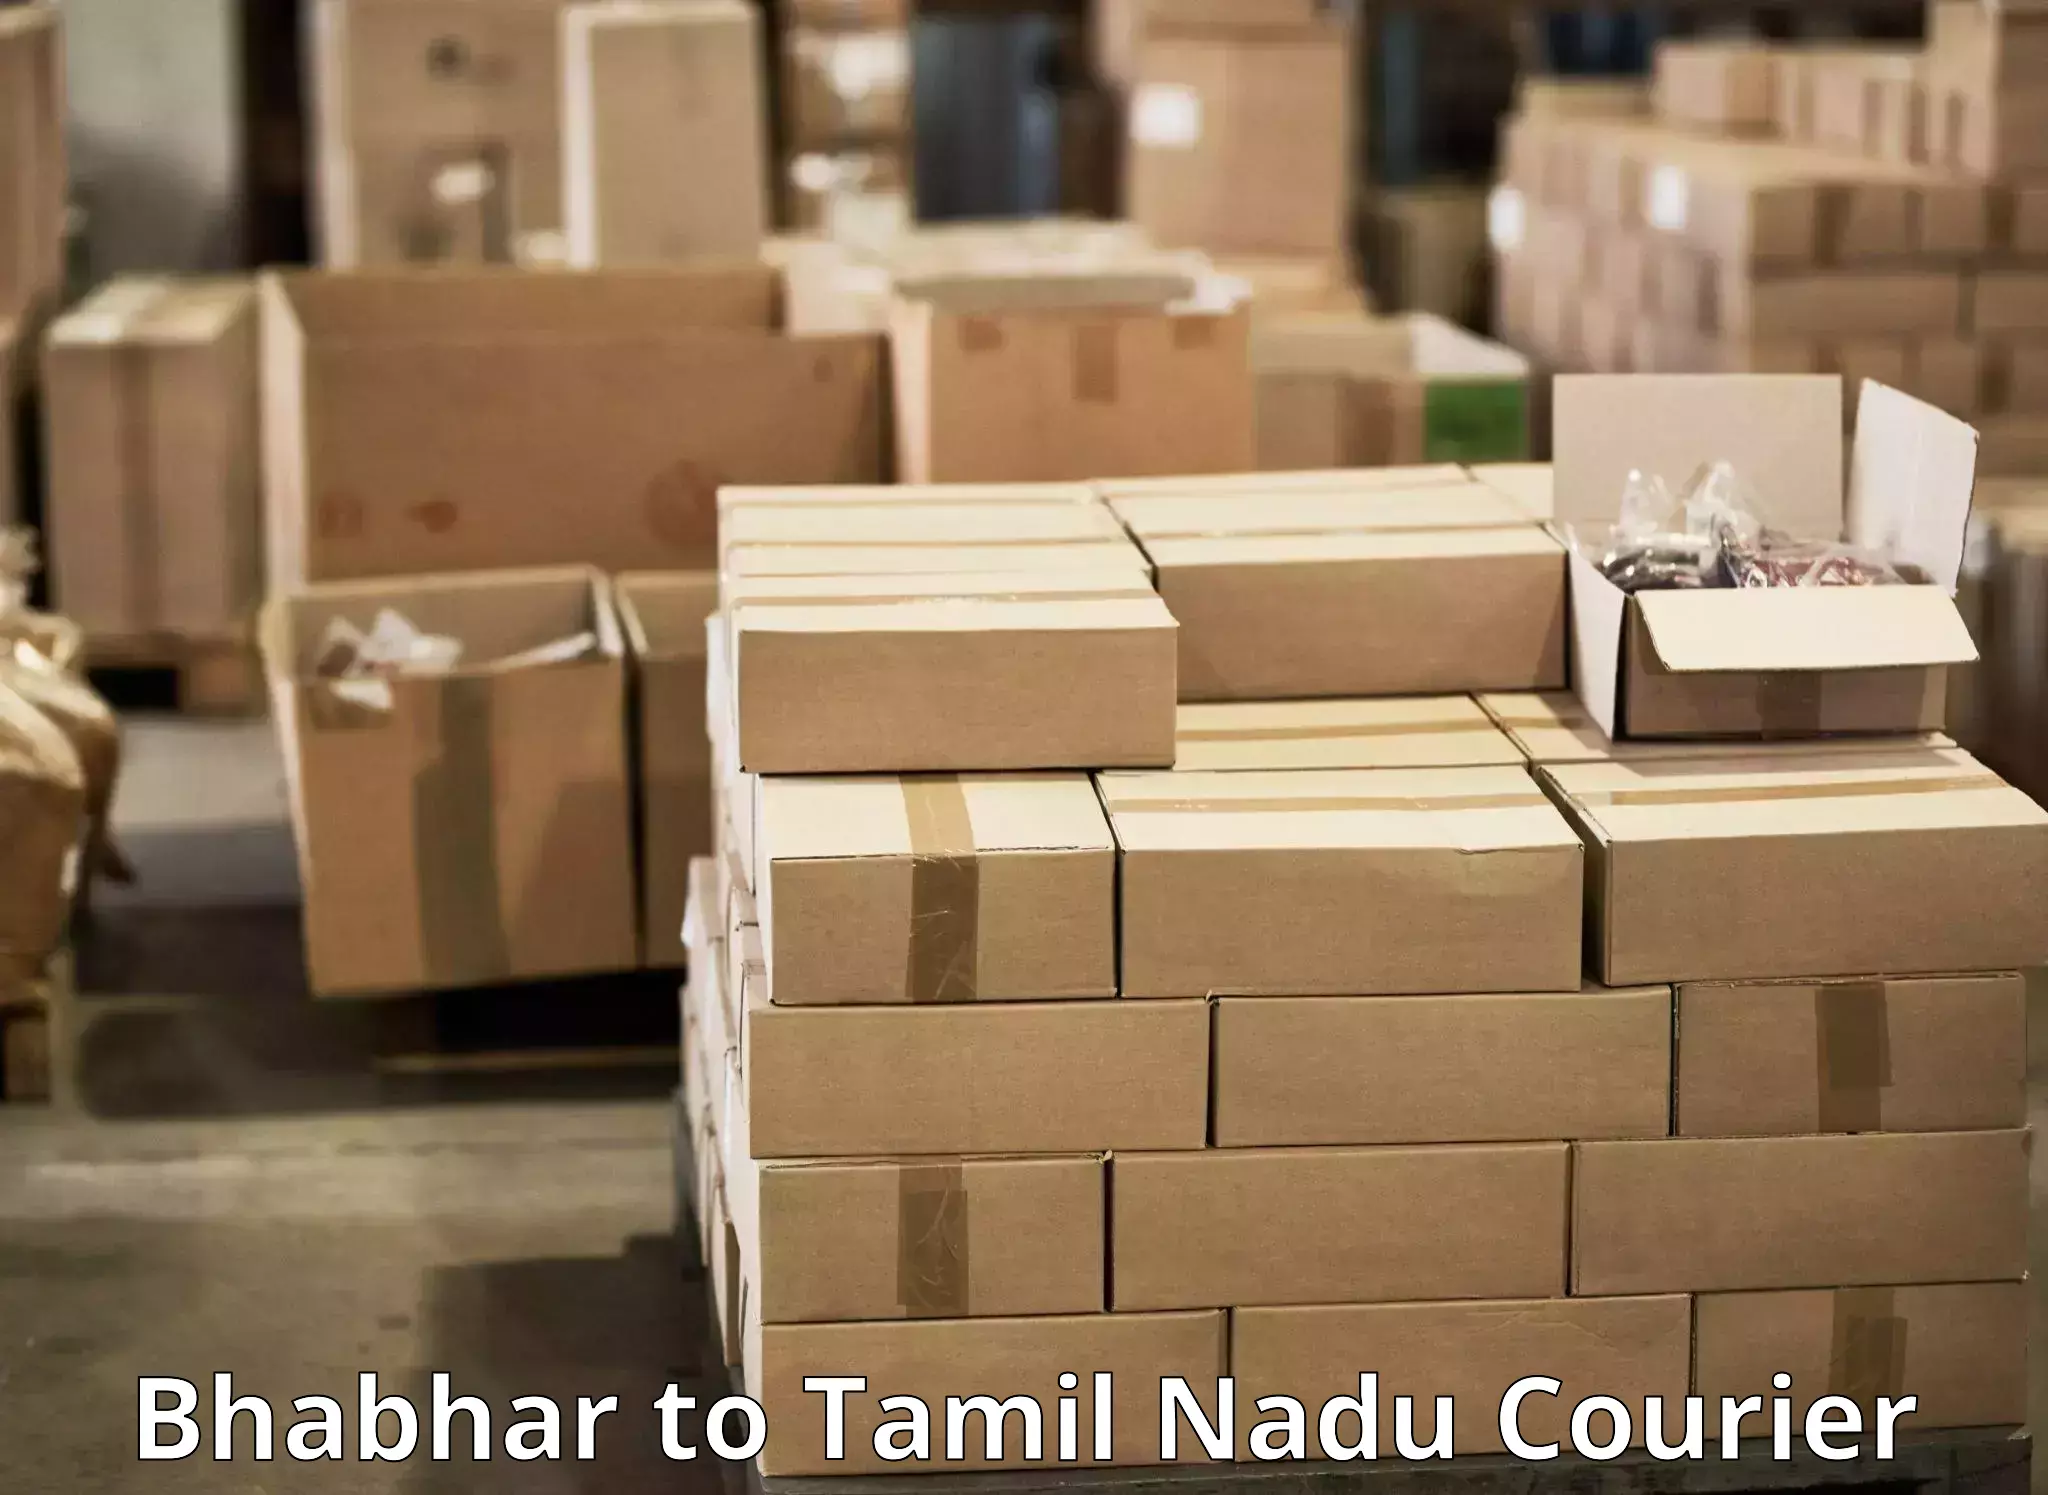 High-capacity parcel service Bhabhar to Chennai Port